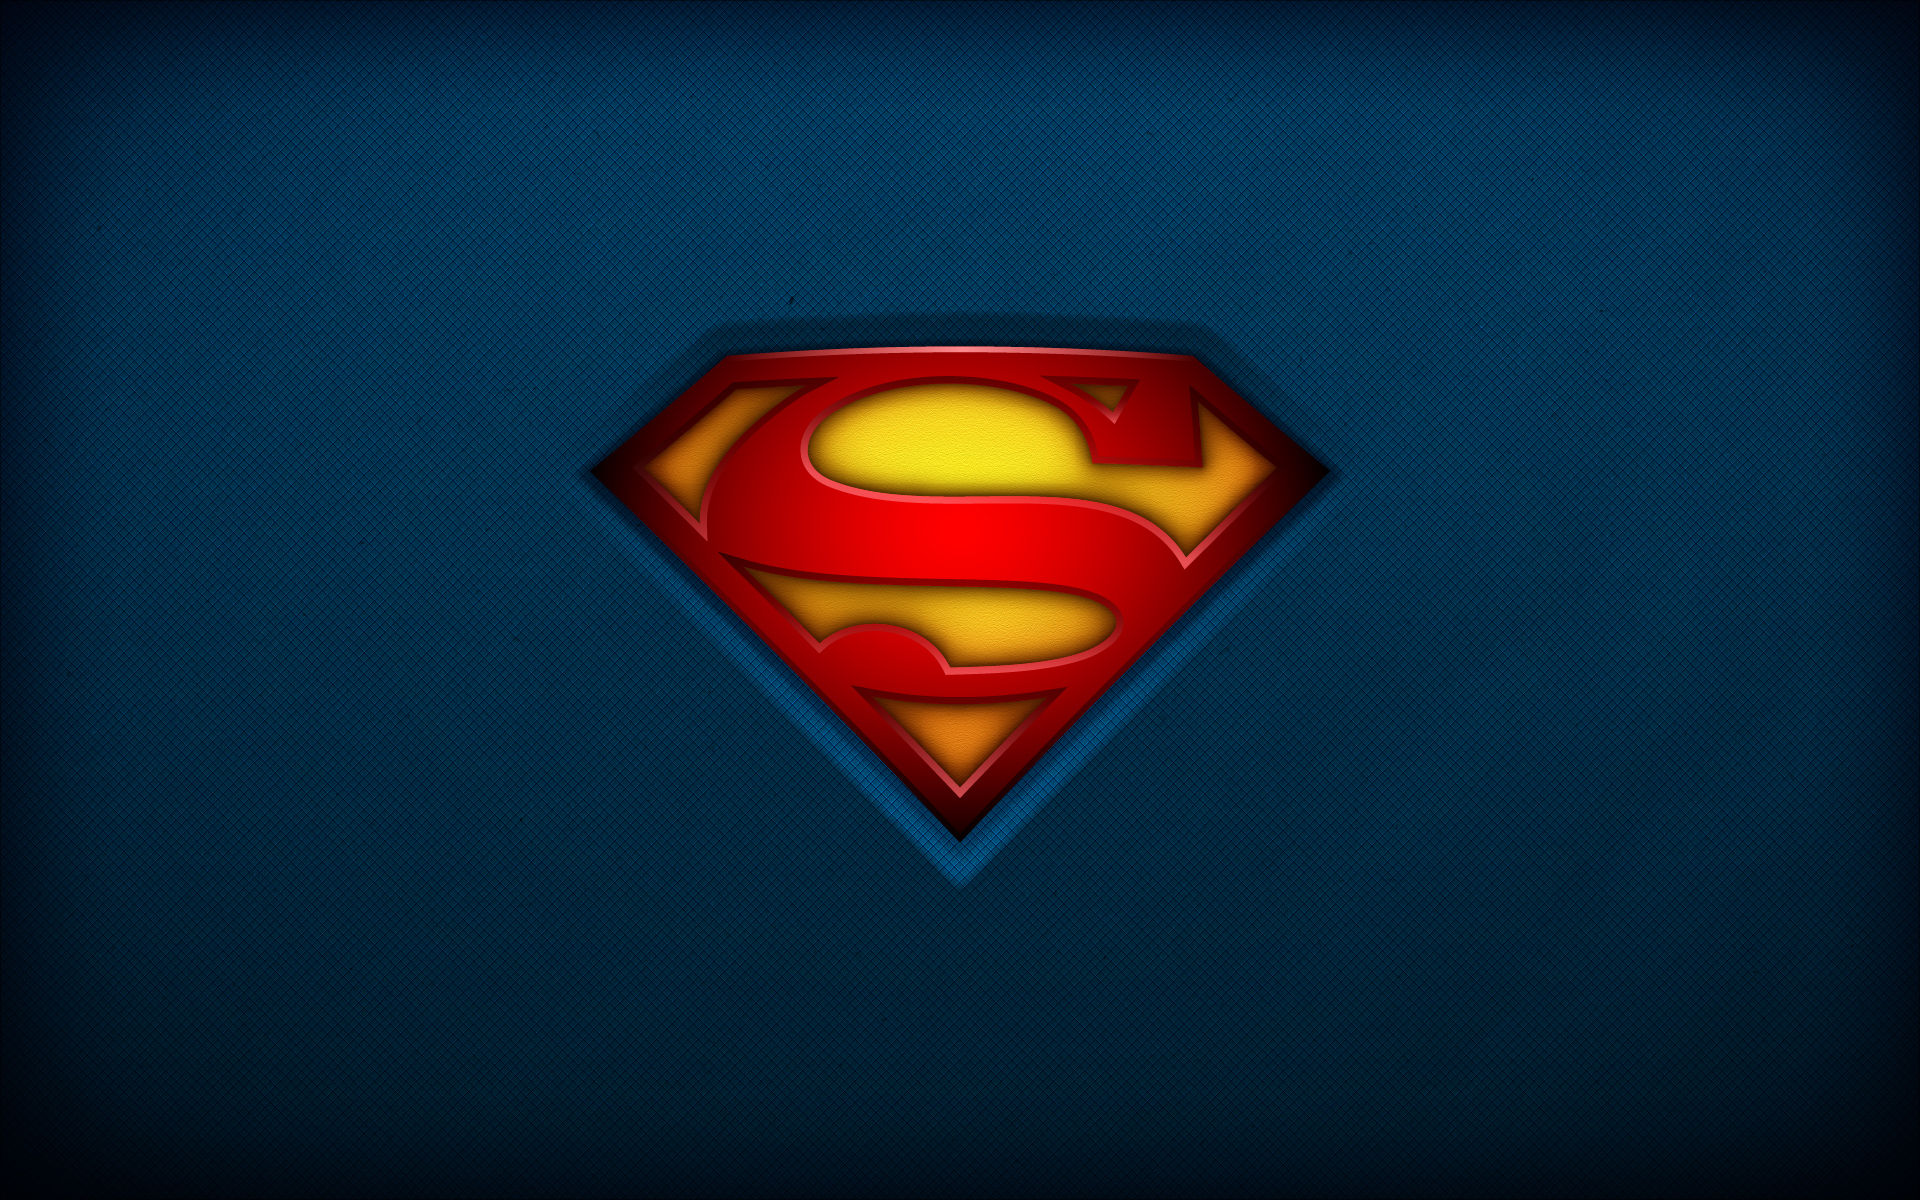 44+] Superman Logo HD Wallpapers 1080p - WallpaperSafari